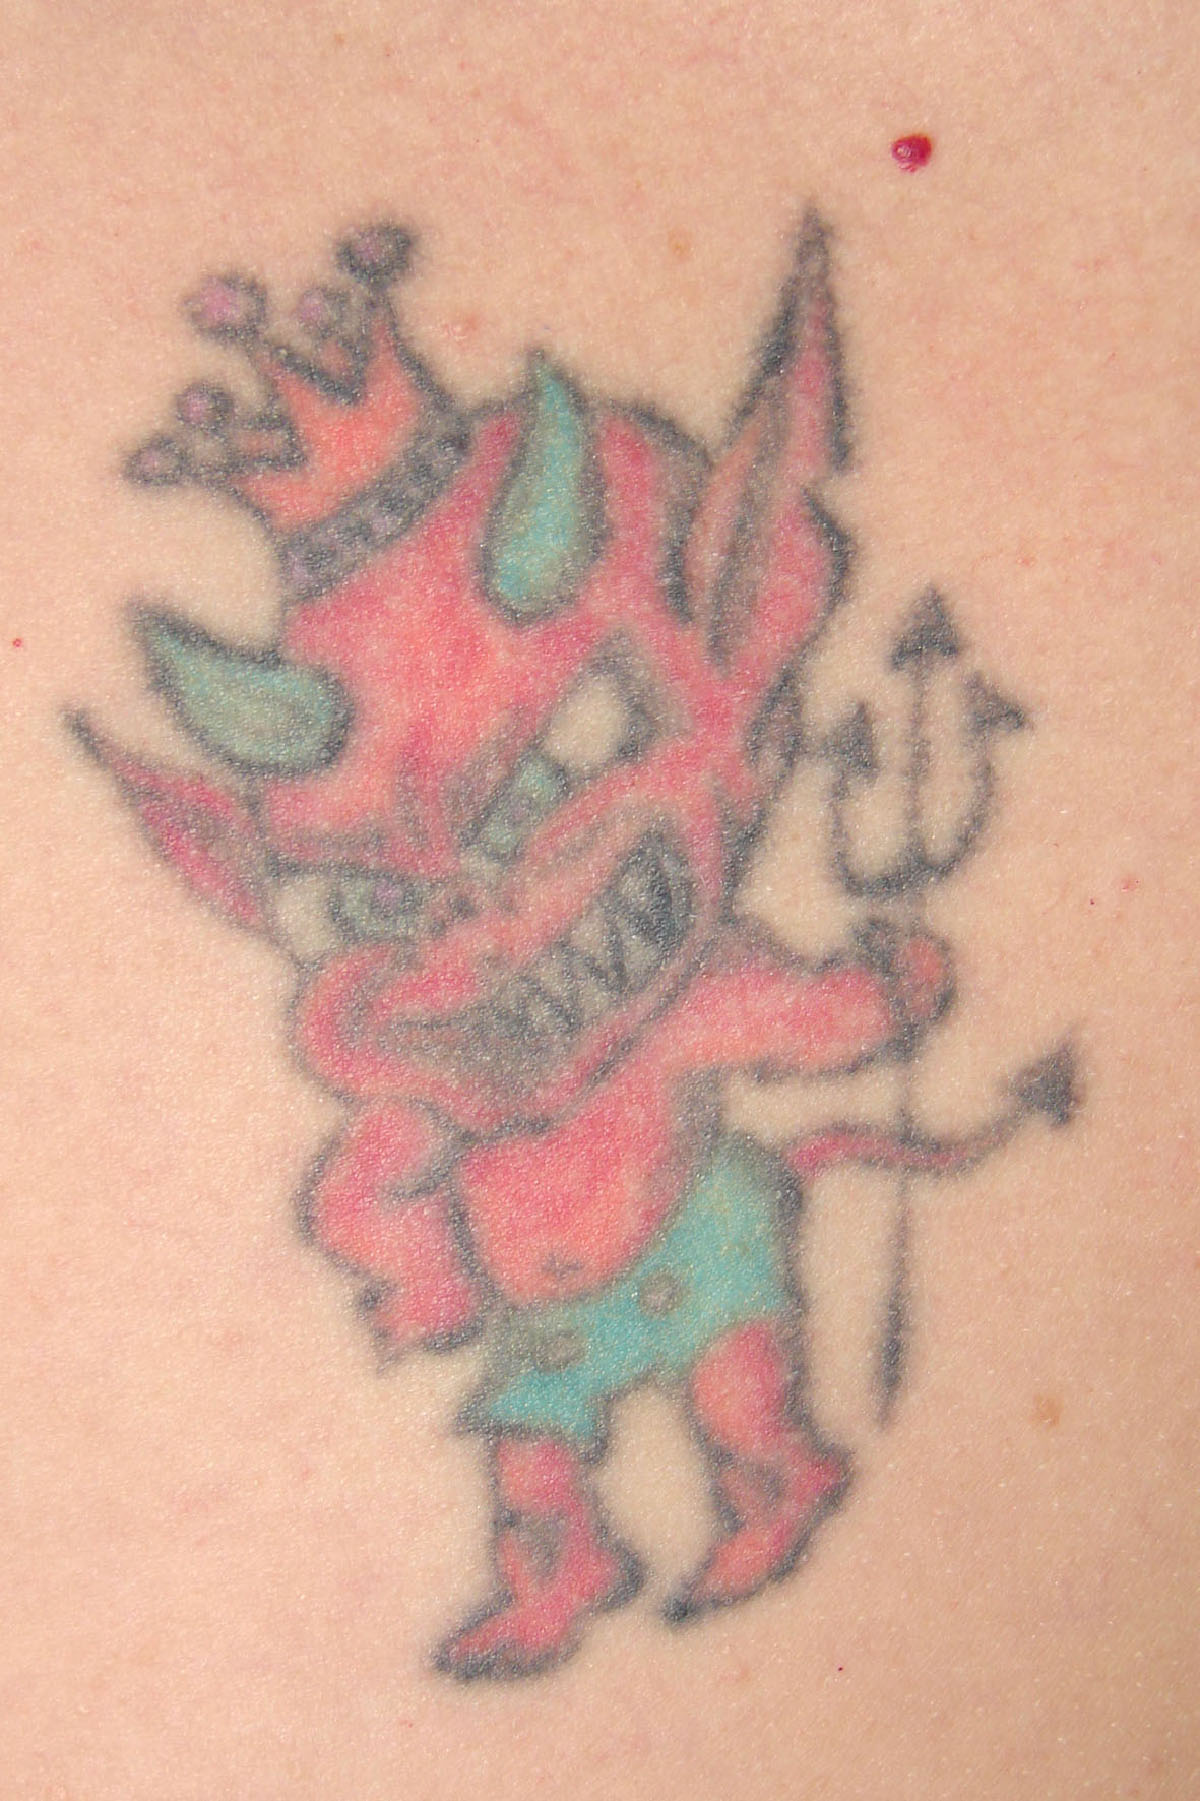 Tattooentfernung eines bunten Tattoos vor der Behandlung